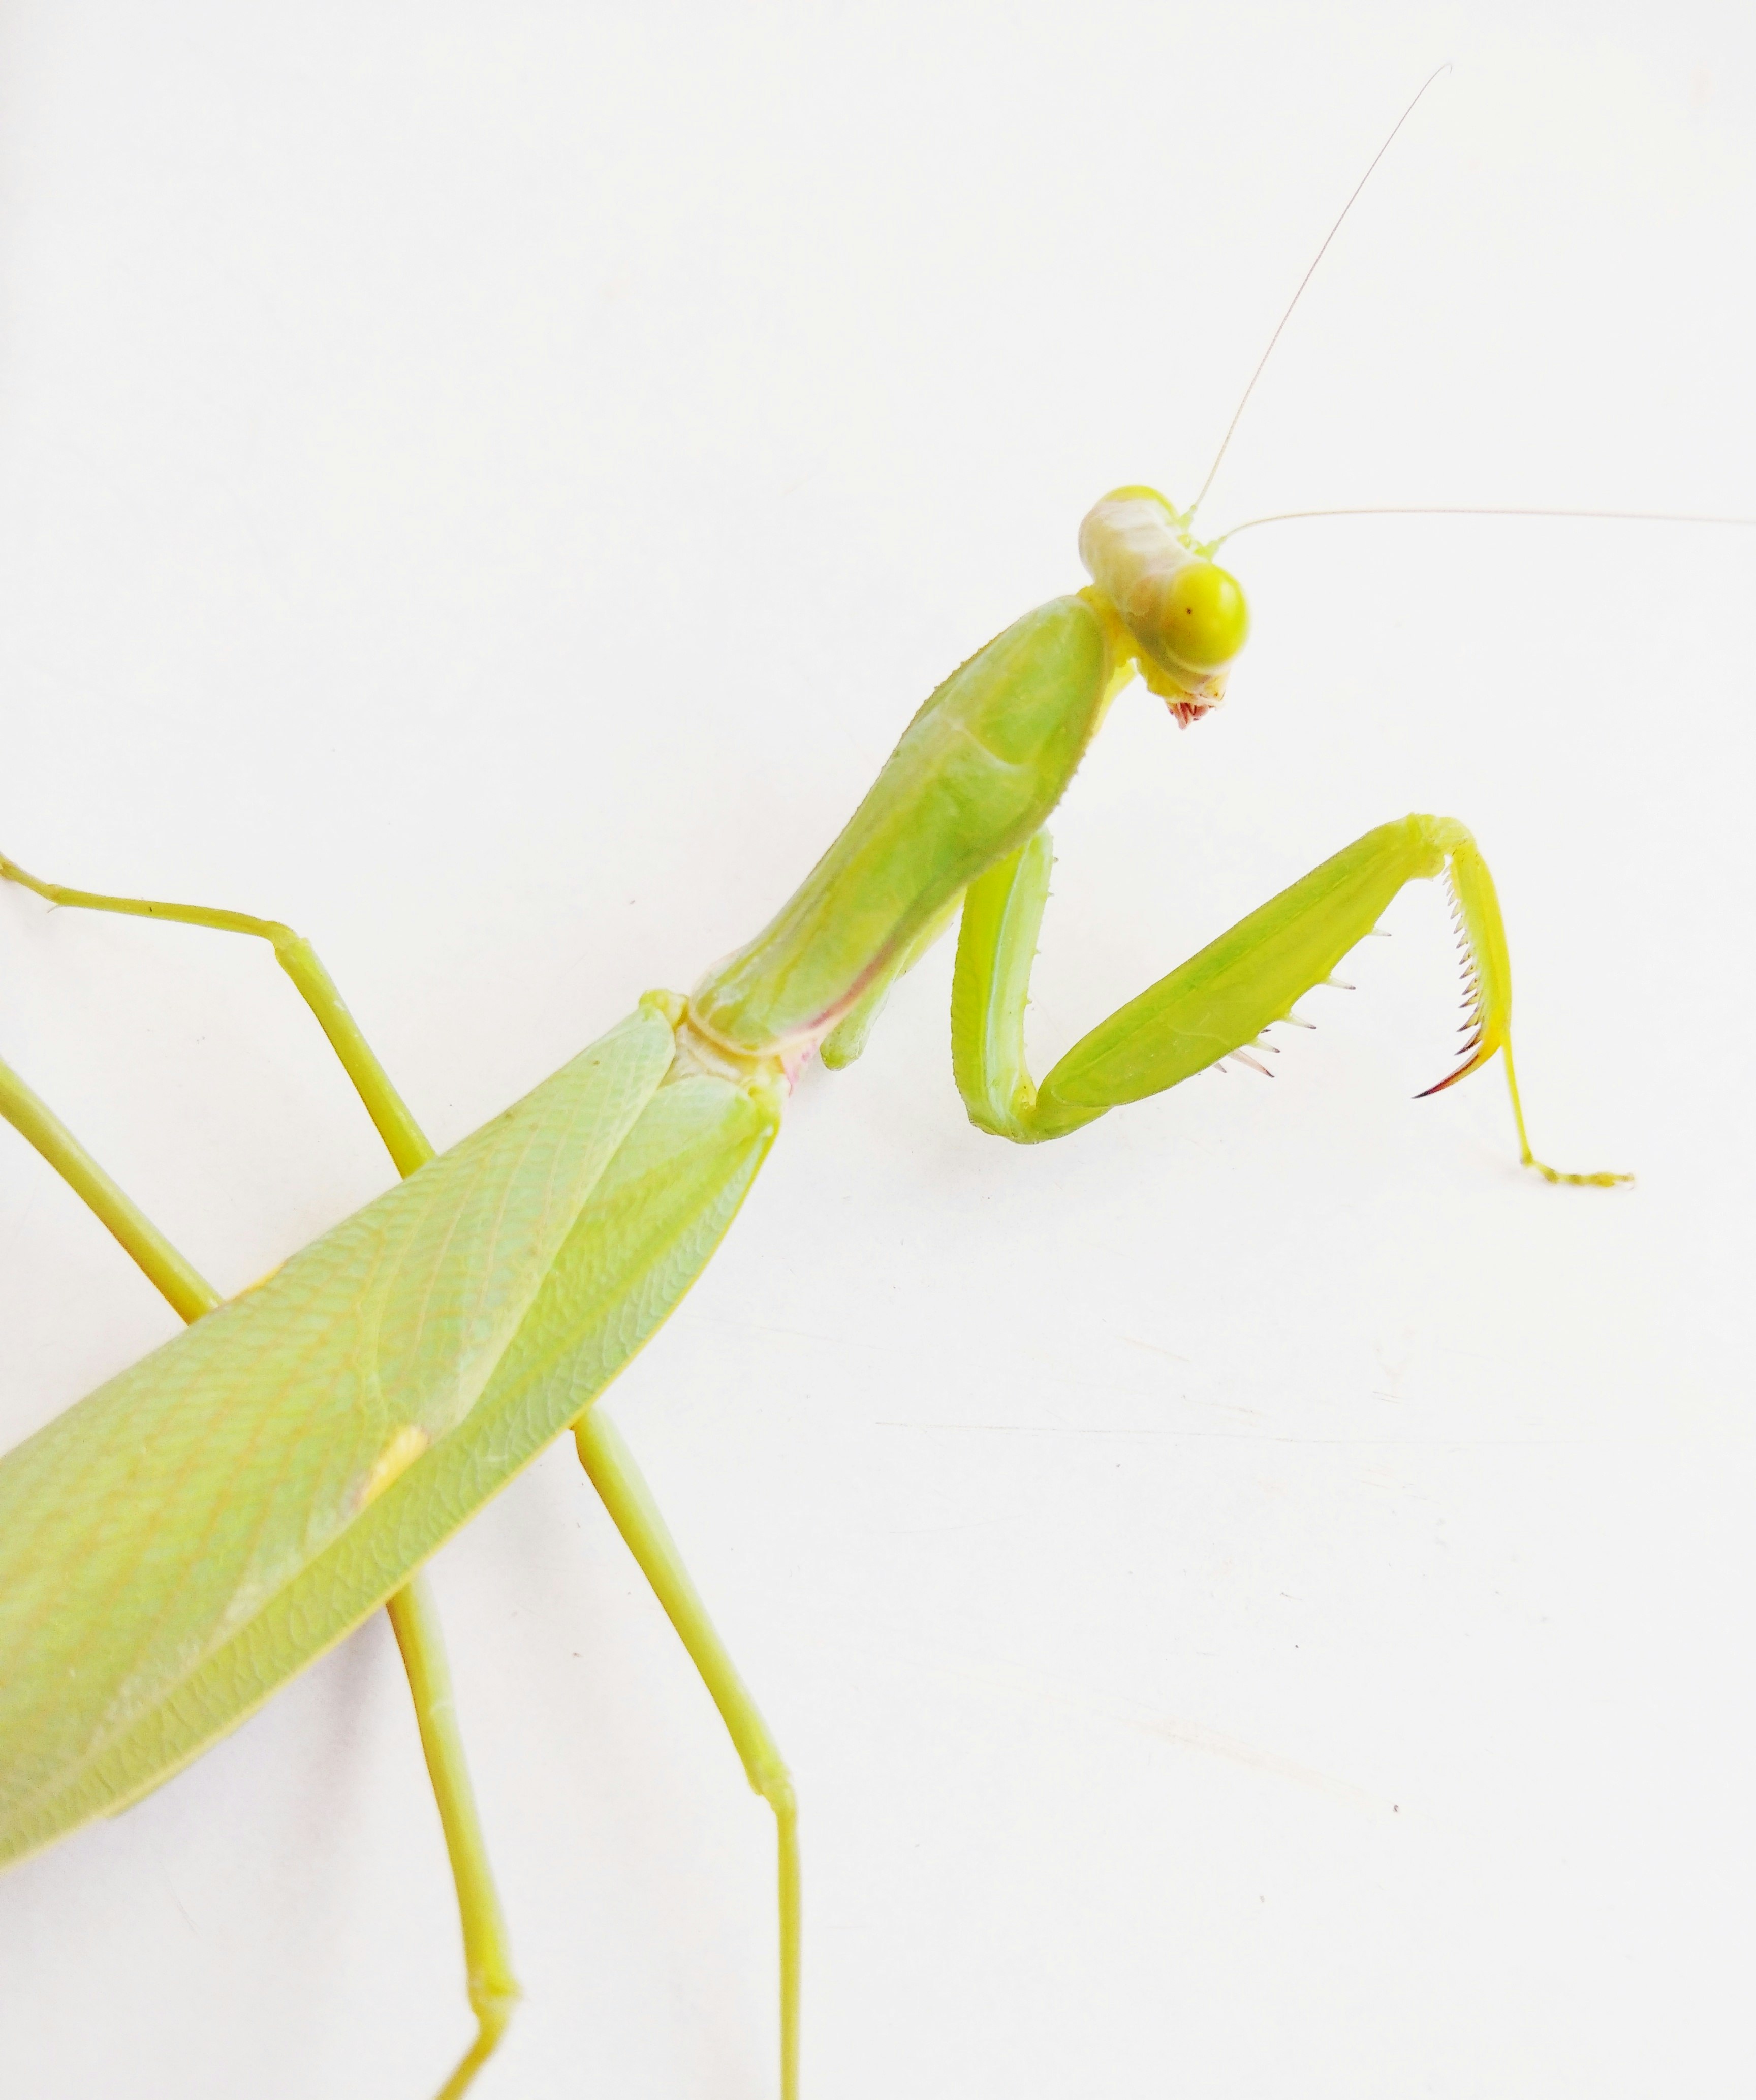 green praying mantis on white surface